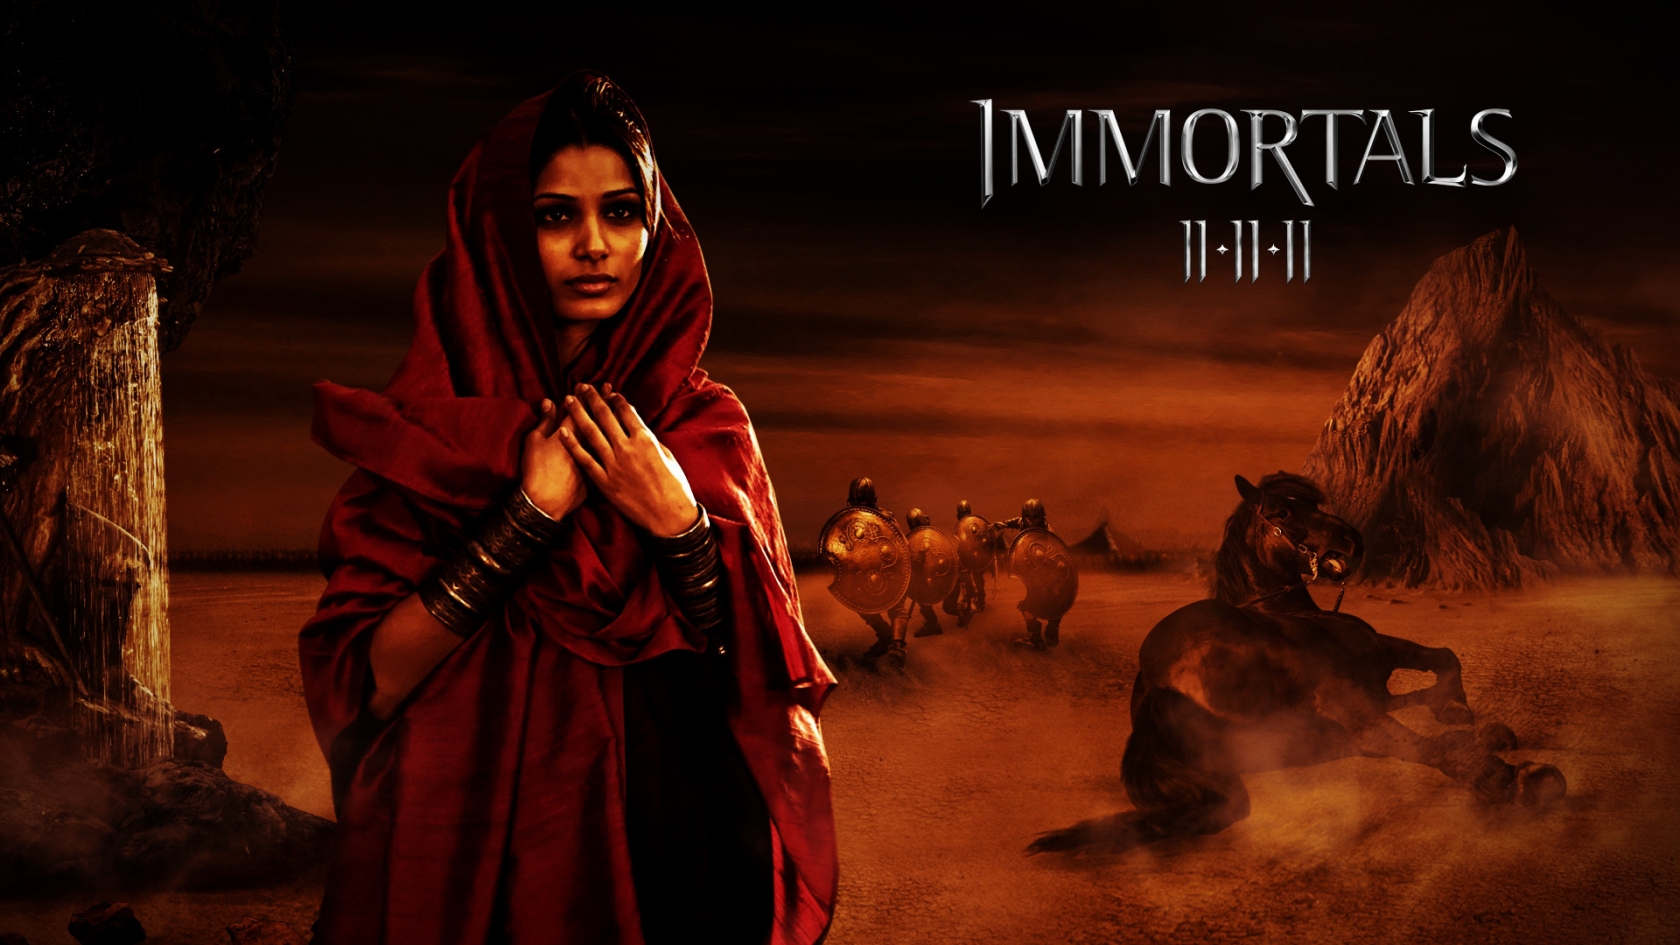 Immortals Movie Scene for 1680 x 945 HDTV resolution